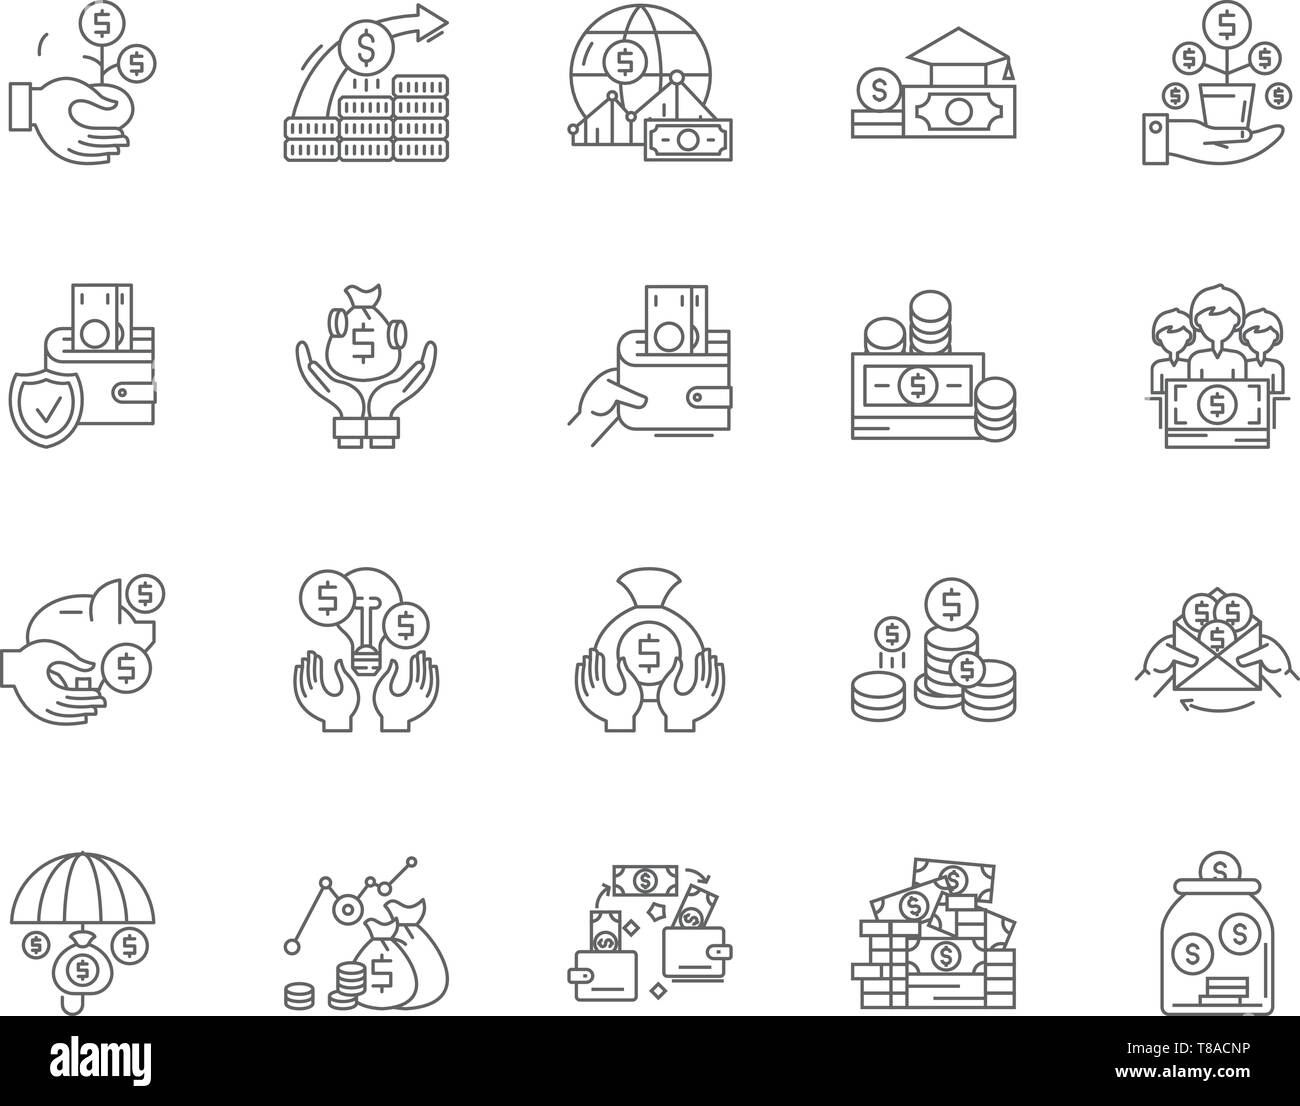 Linea del banchiere icone, segni, set di vettore, illustrazione di contorno concept Illustrazione Vettoriale